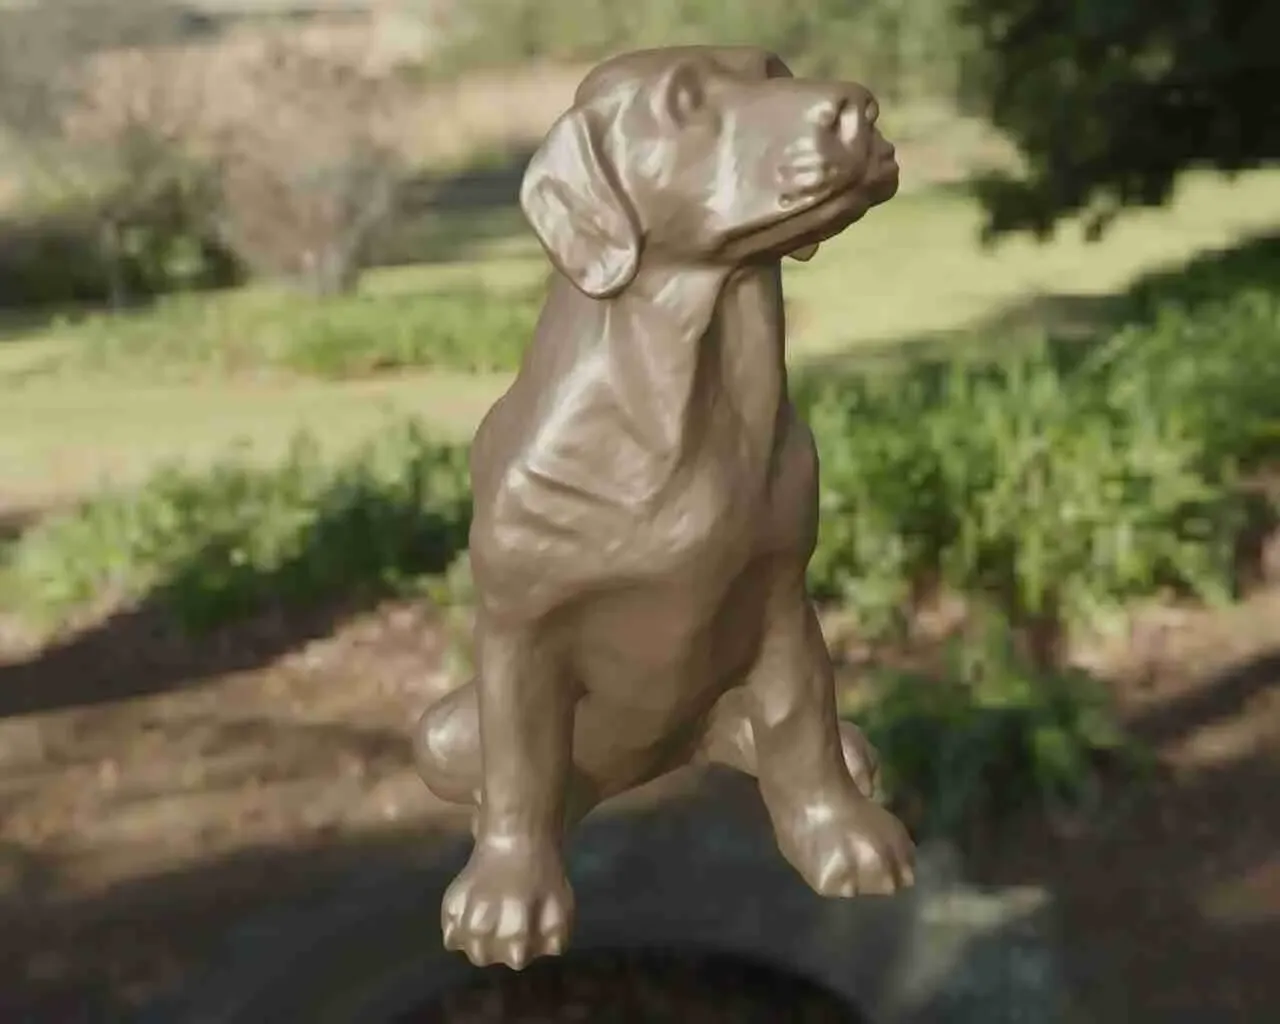 Dog Labrador